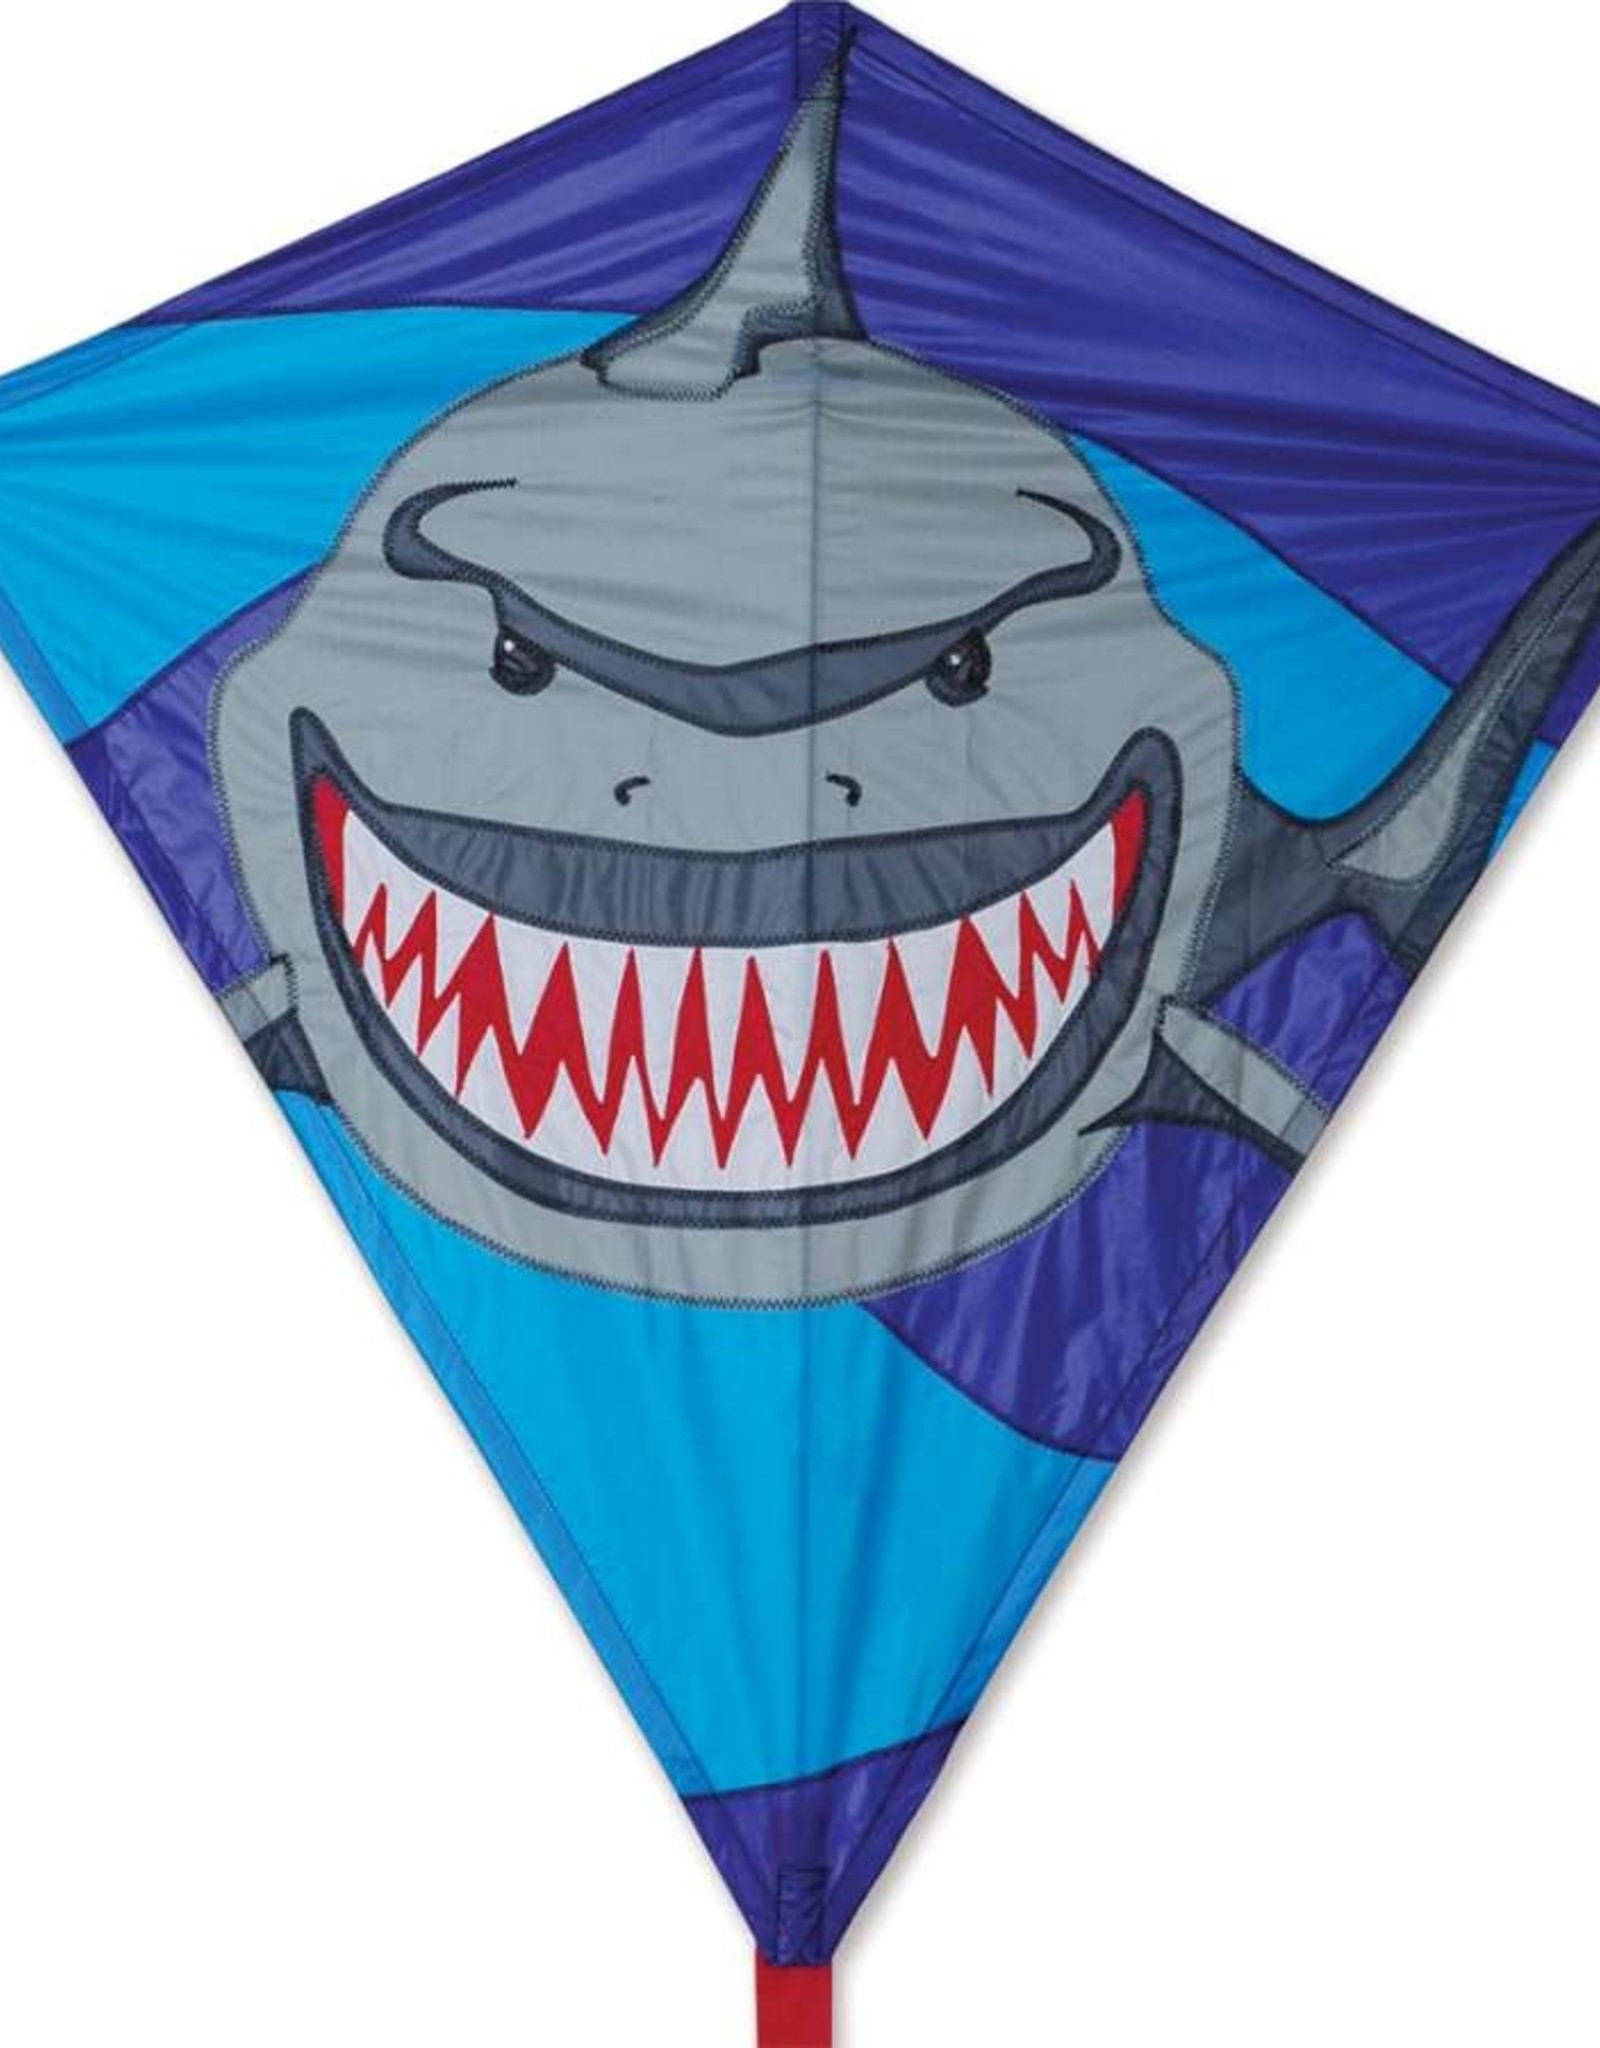 Premier Kites Kite - 30inch Diamond - Jawbreaker